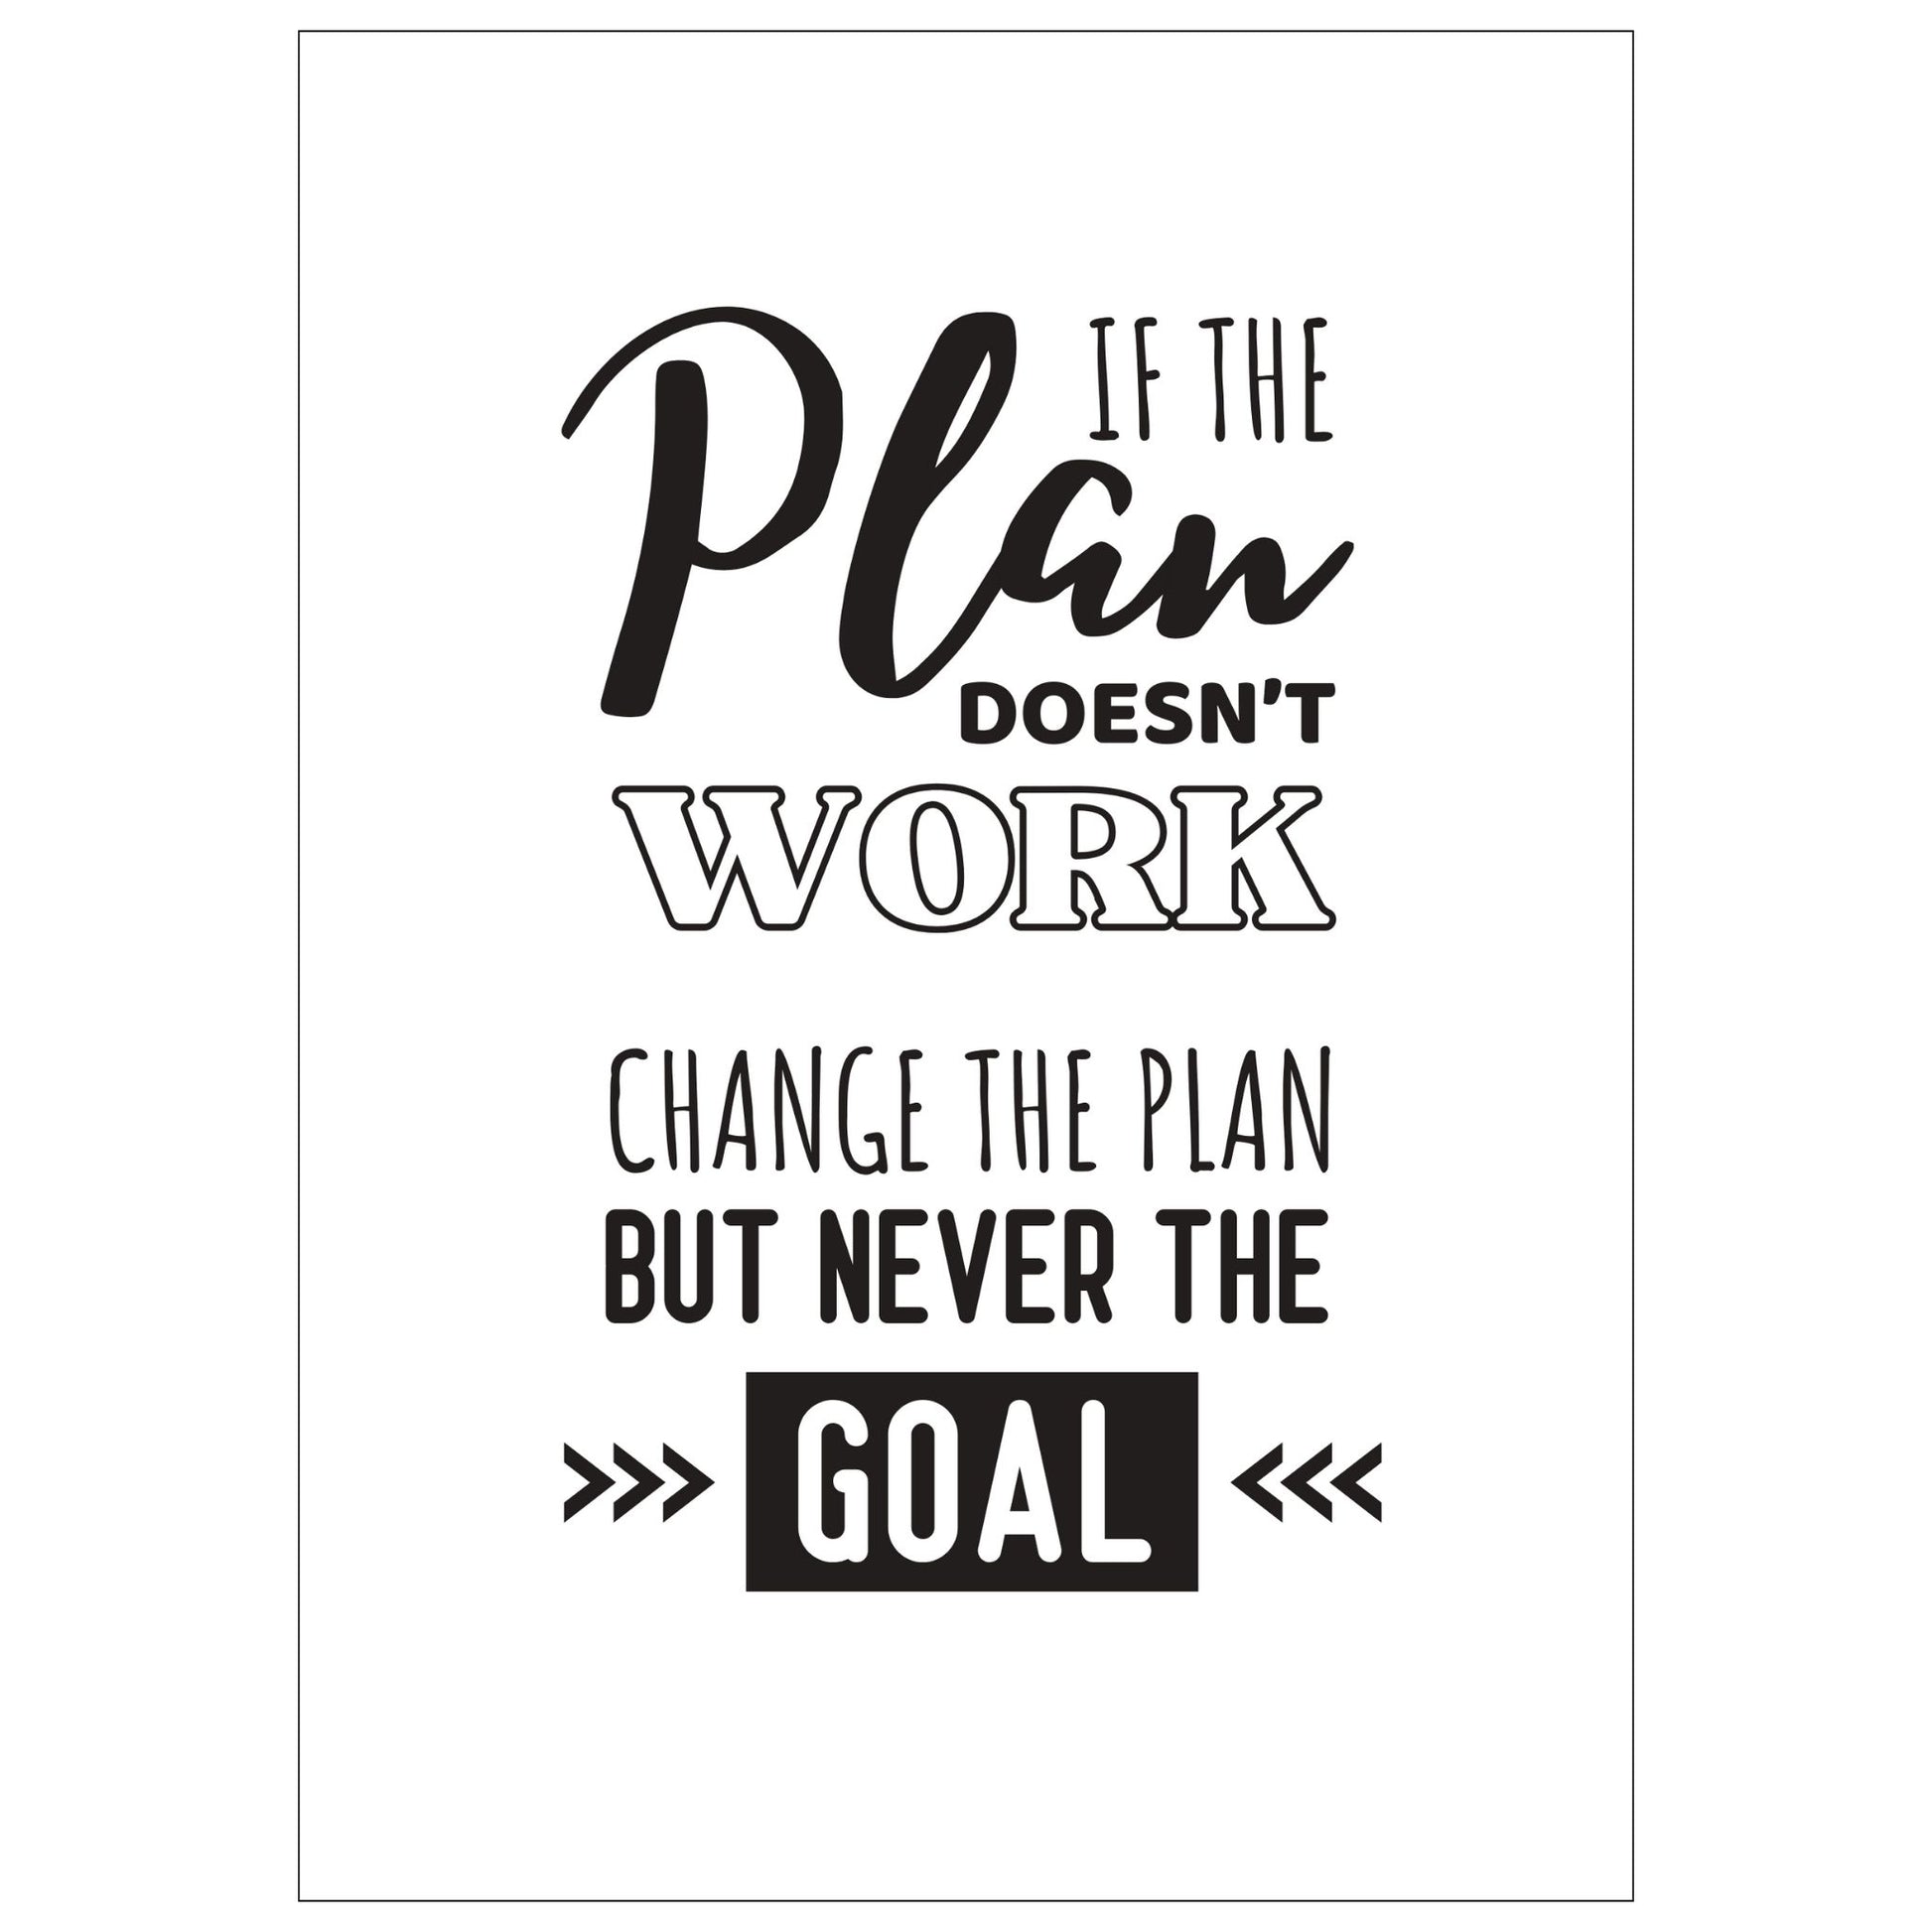 Grafisk tekstplakat med sort skrift på hvit bakgrunn og tekst "If the plan doesn't work, change the plan but never the goal".